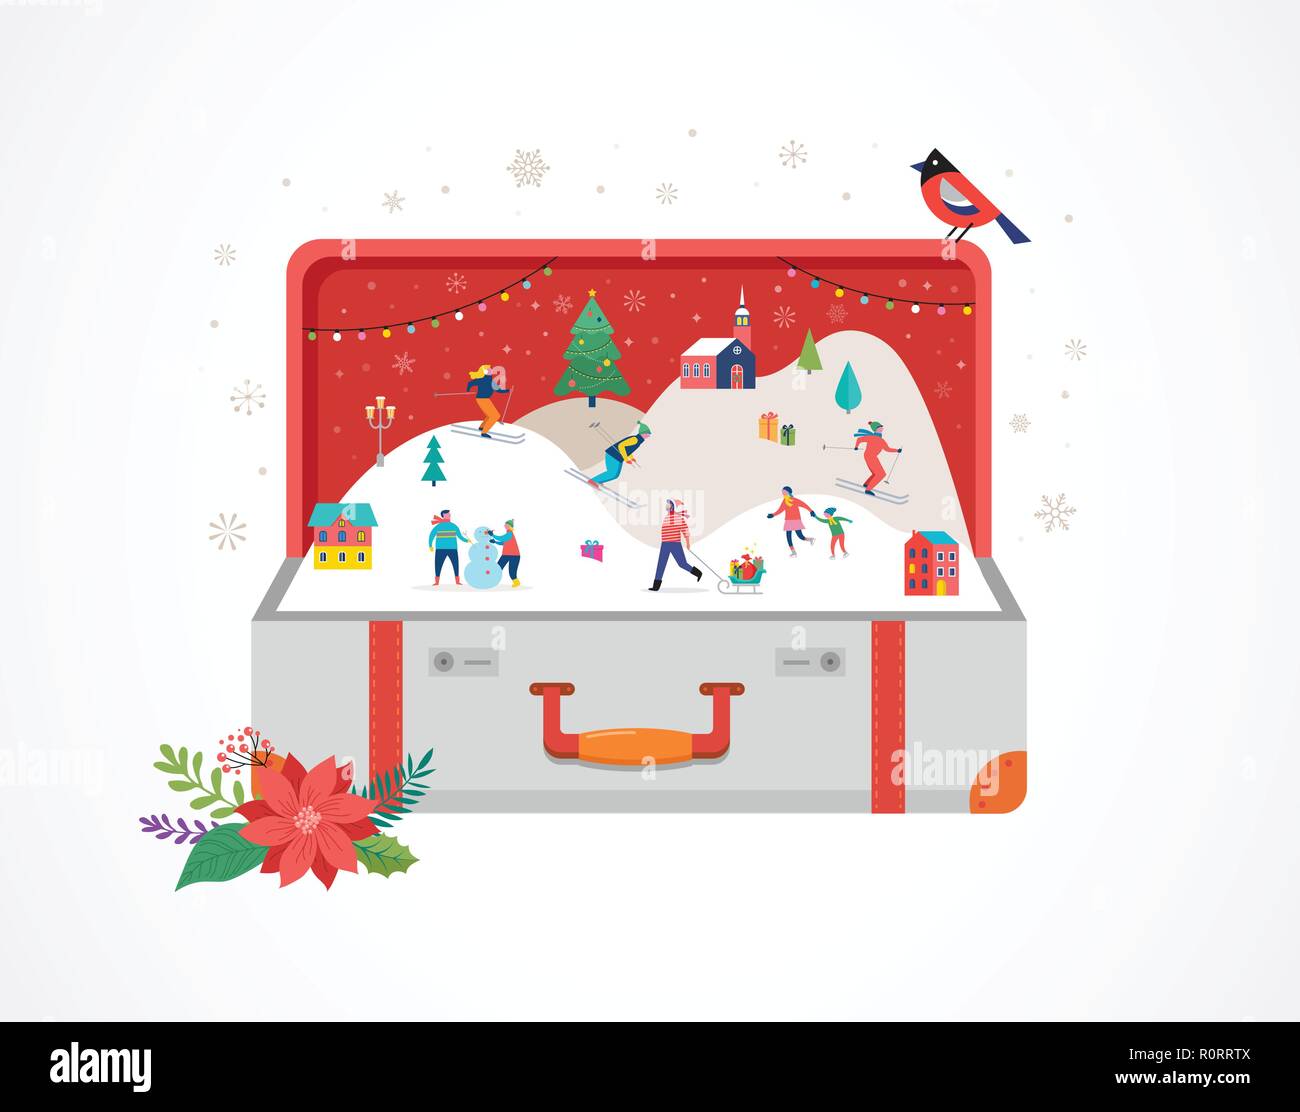 Frohe Weihnachten, große offene Koffer mit Winter Szene und kleine Leute, junge Männer und Frauen, Familien Spaß im Schnee, Skifahren, Snowboarden, Rodeln, Eislaufen. Konzept Vector Illustration Stock Vektor